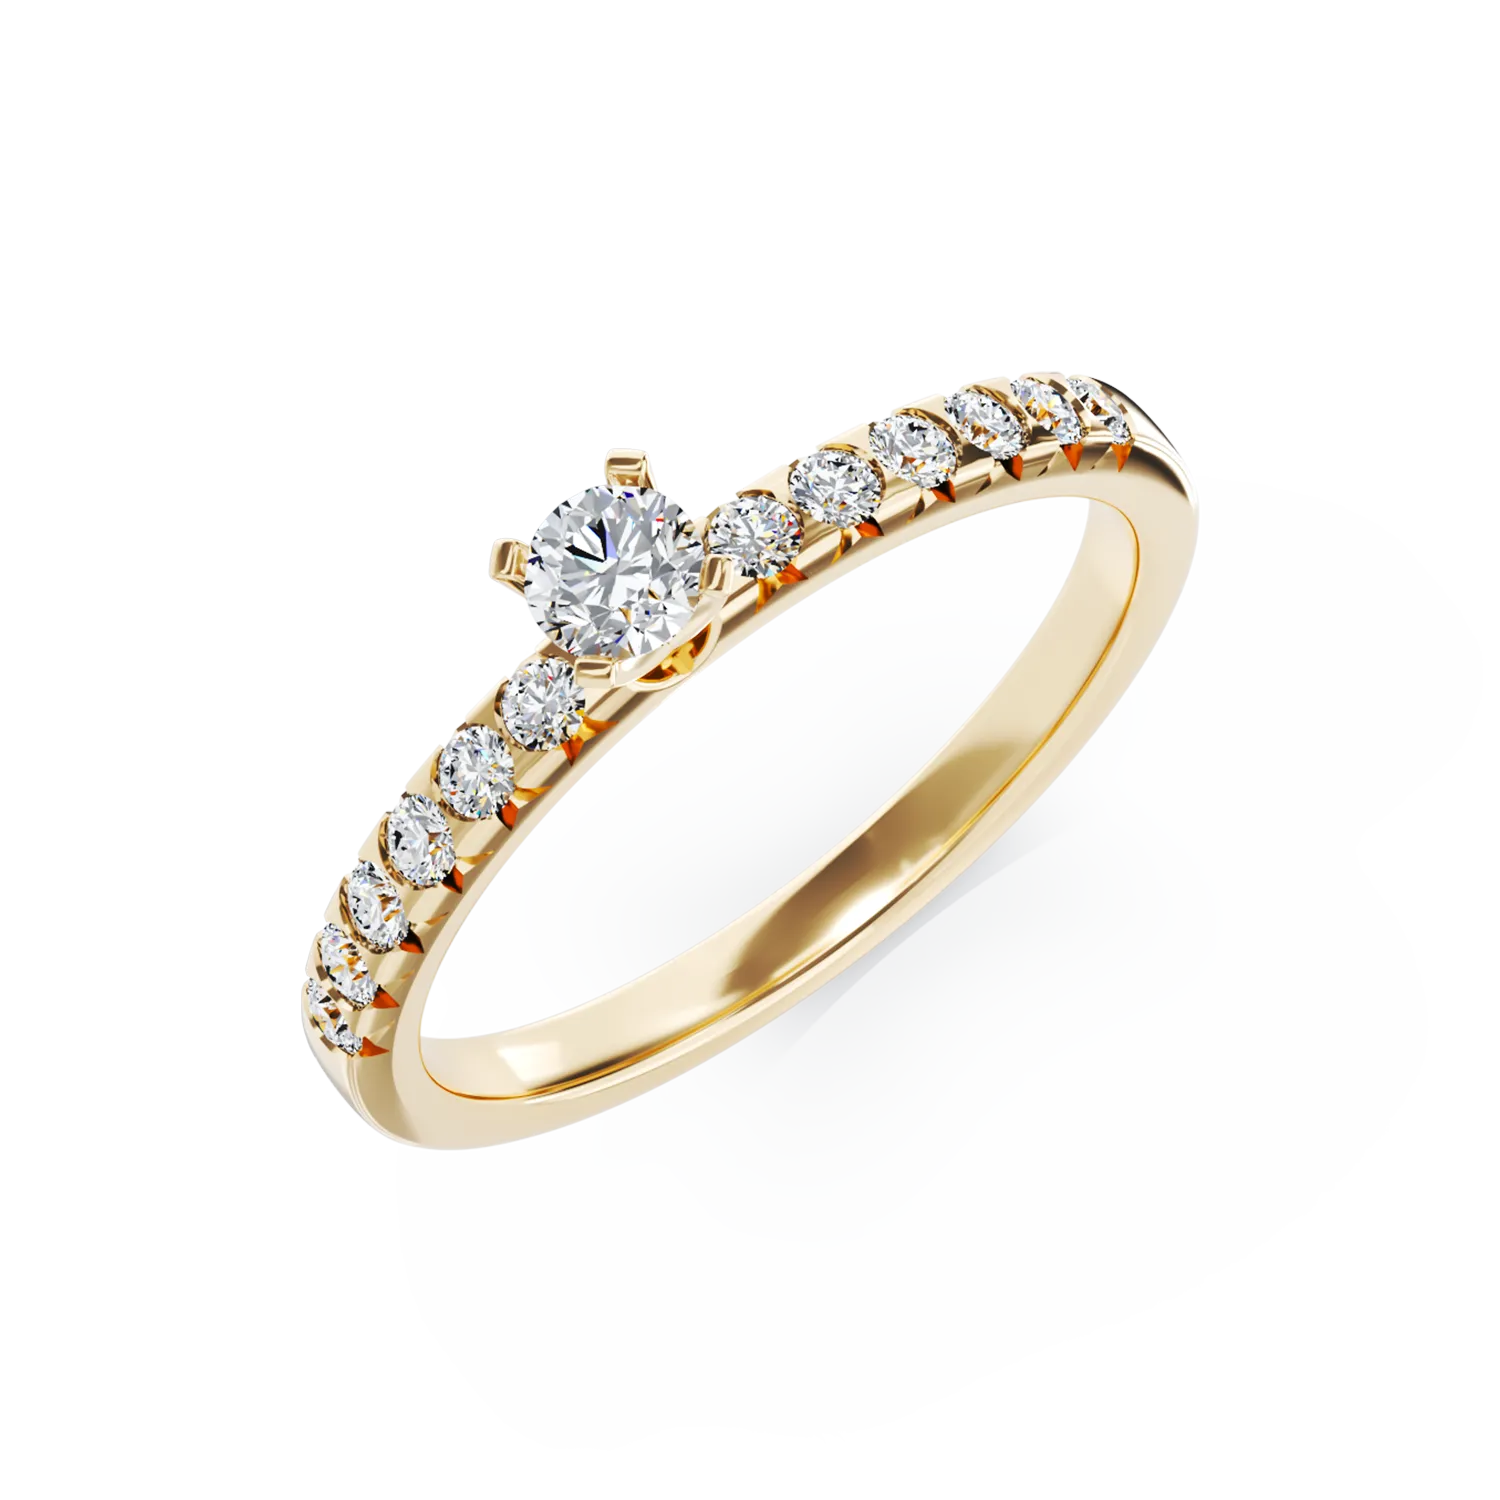 Eljegyzési gyűrű 18K-os sárga aranyból 0,15ct gyémánttal és 0,28ct gyémántokkal. Gramm: 2,53